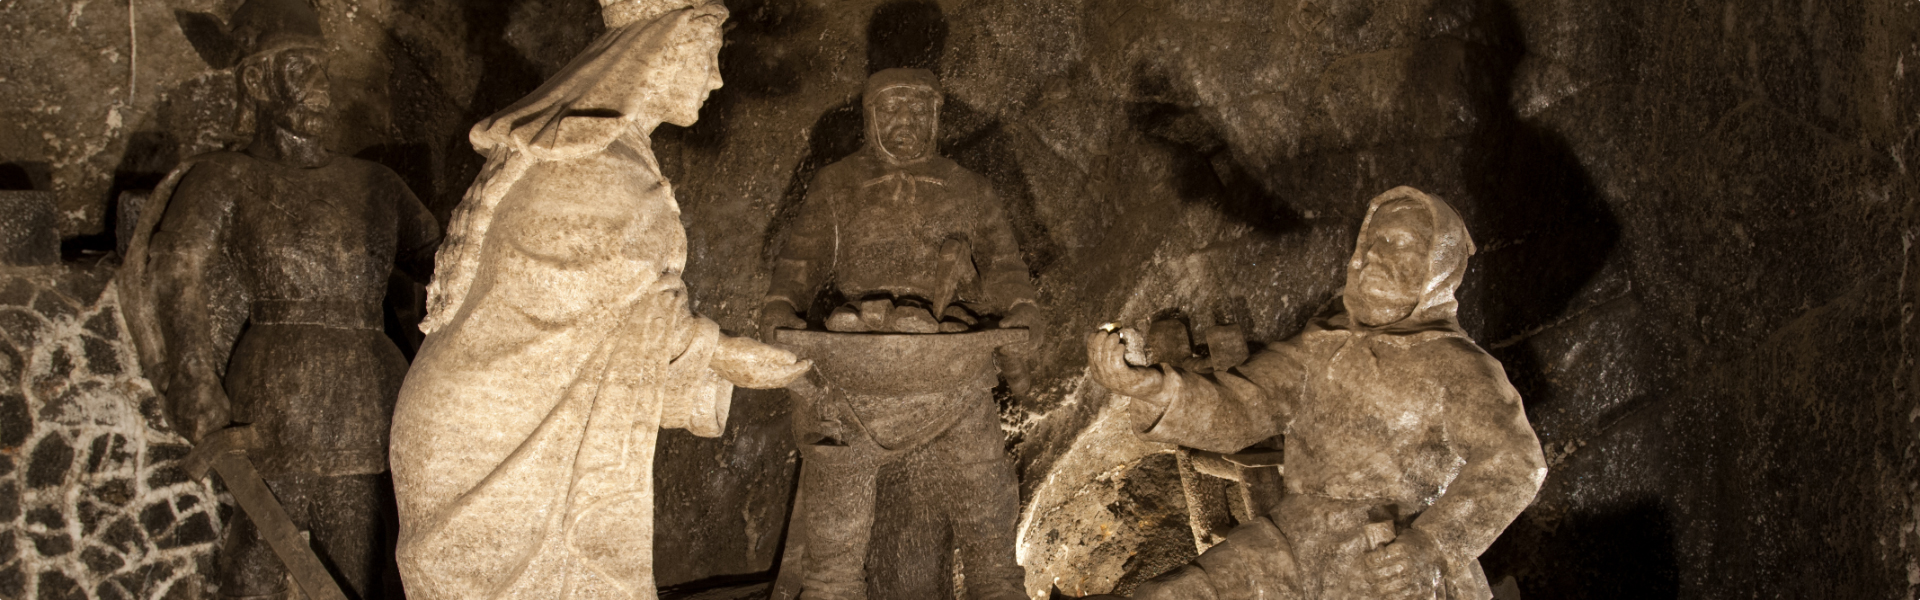 Wieliczka Salt Mine – miners route